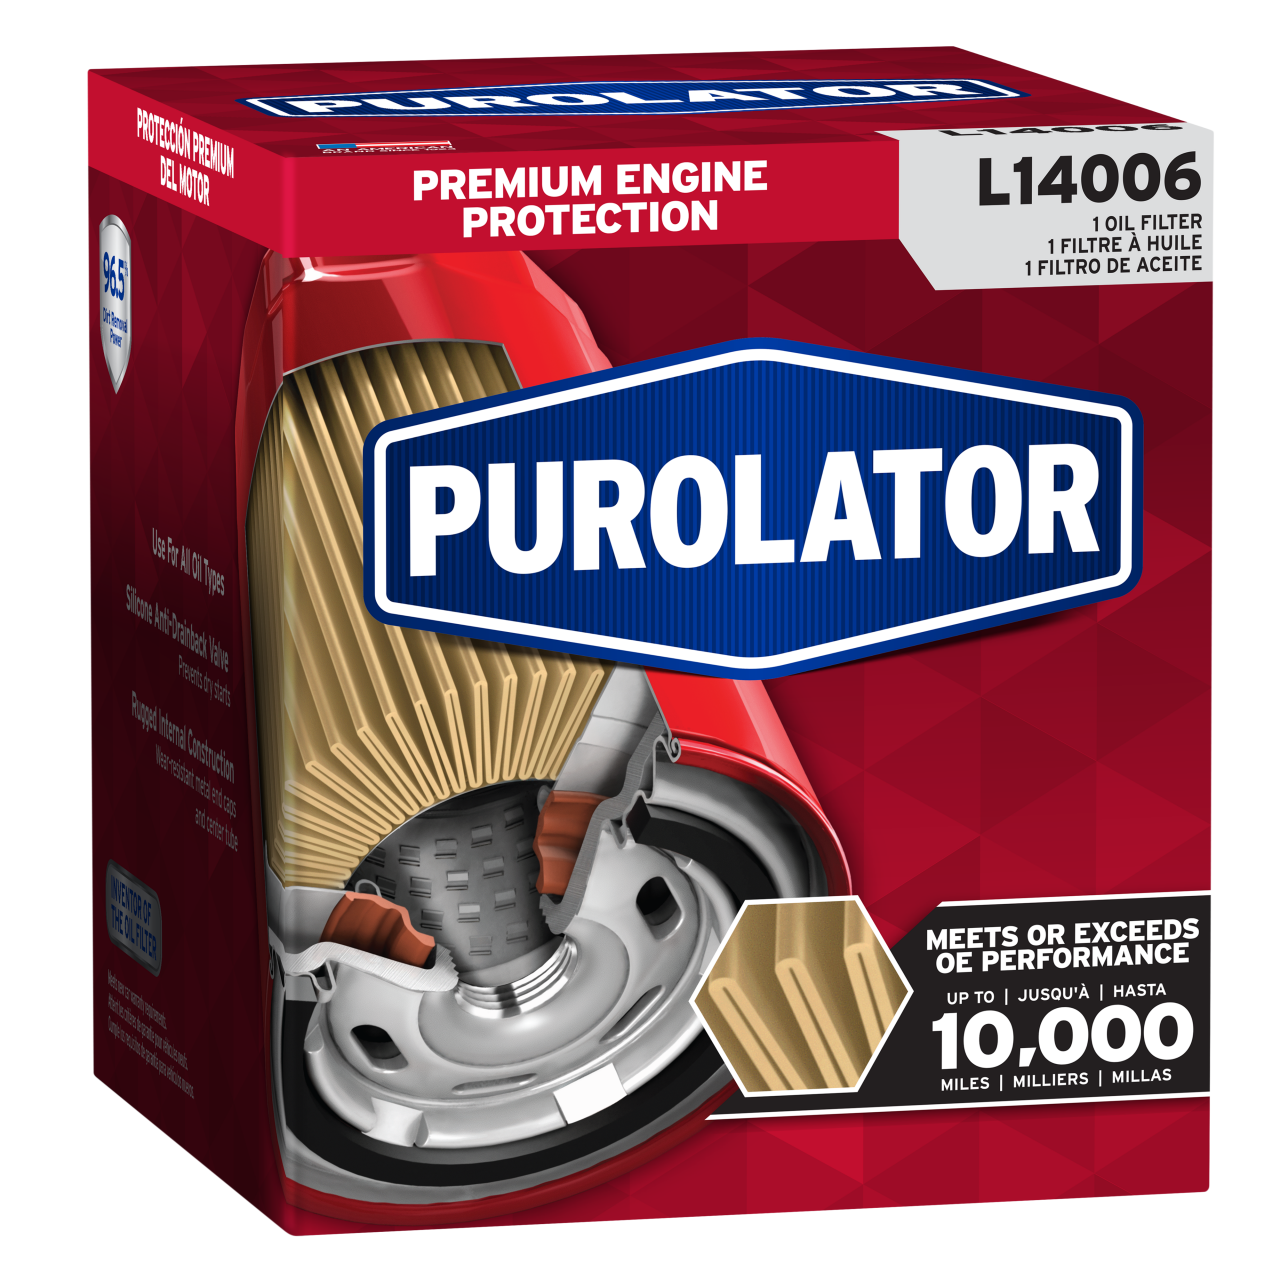 Ideal para condiciones de conducción normales, la línea clásica de filtros de aceite Purolator sigue siendo tan confiable como siempre para la protección del motor.